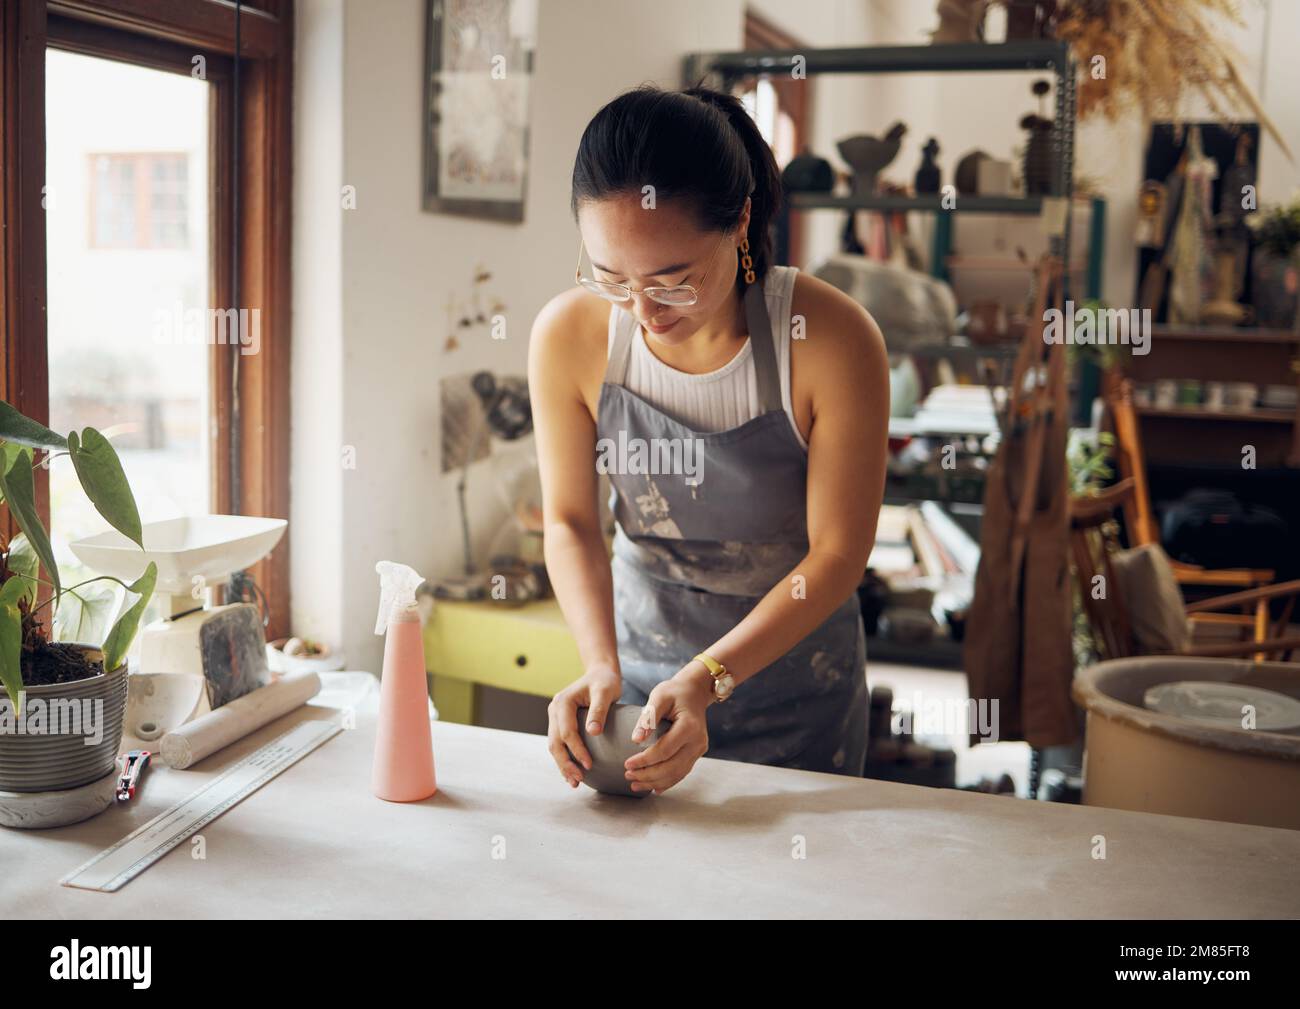 Gestalten, Formen und Töpfern Sie Geschäftsfrau mit Ton für Kreativität, Inspiration und Kunstverarbeitung in der Werkstatt. Kreativ, kleines Unternehmen und asiatisches Mädchen Stockfoto